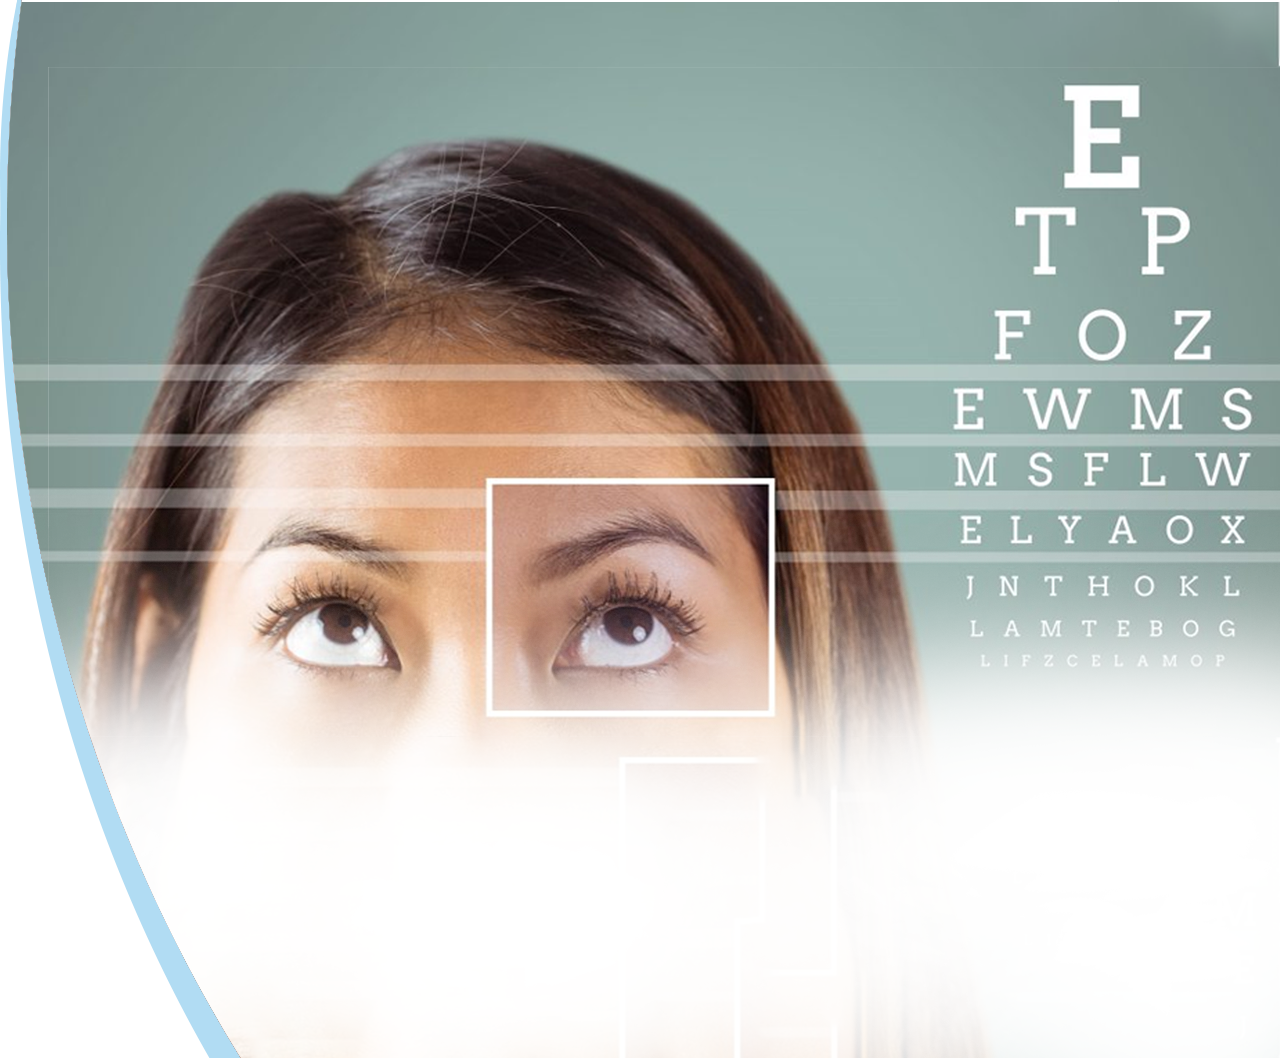 Tous les défauts optiques de la vue sont opérables avec les lasers cornéens ou les implants oculaires